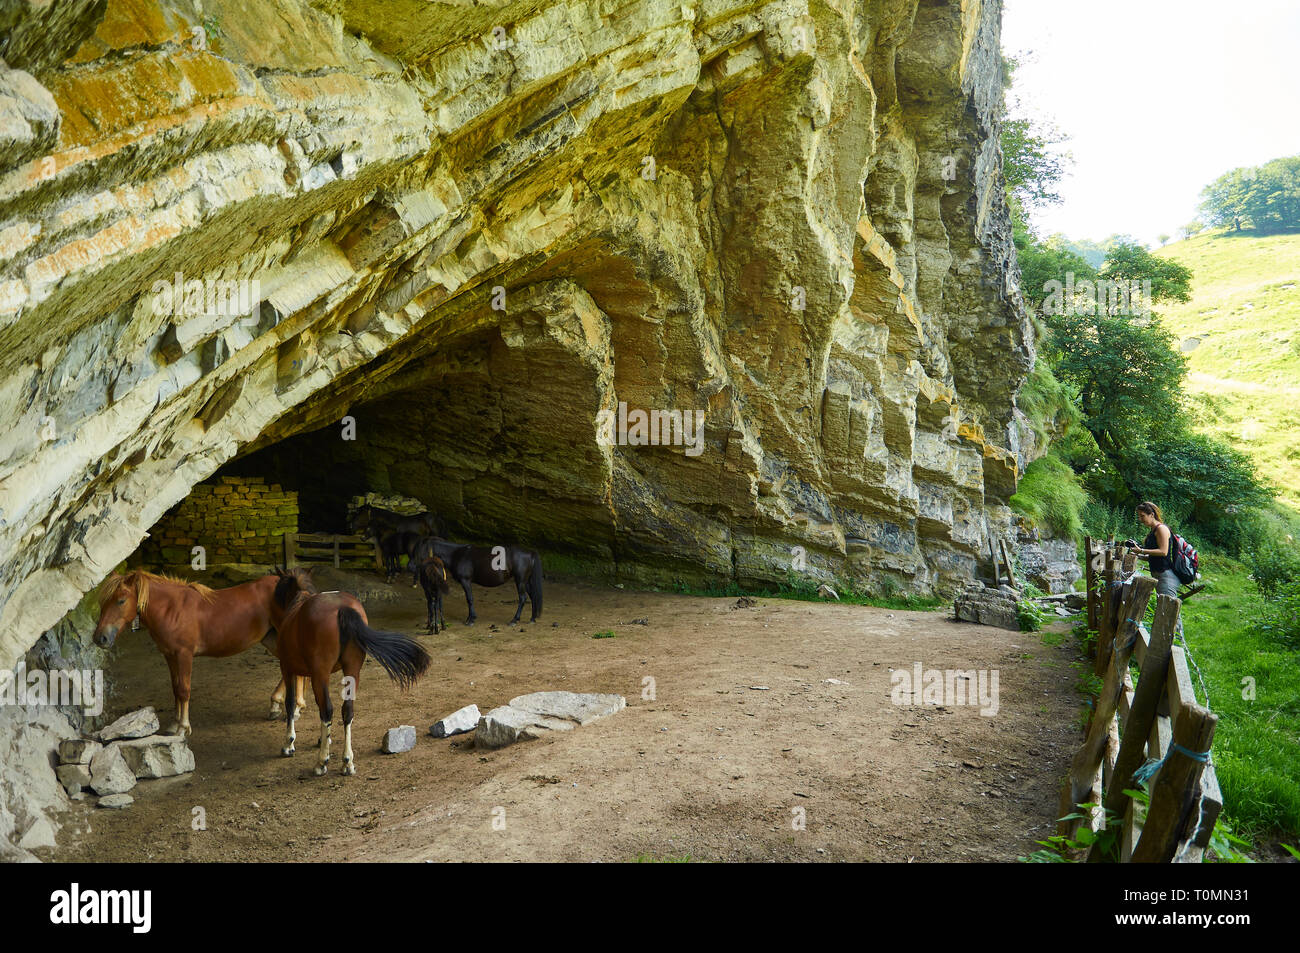 Junge Wandererin beim Betrachten von Pferden in der Höhle Arpea, einer spektakulären Falte mit Antitlinien, die als Pferdehuhltort in den französischen Pyrenäen (Estérençuby, Frankreich) genutzt wird Stockfoto